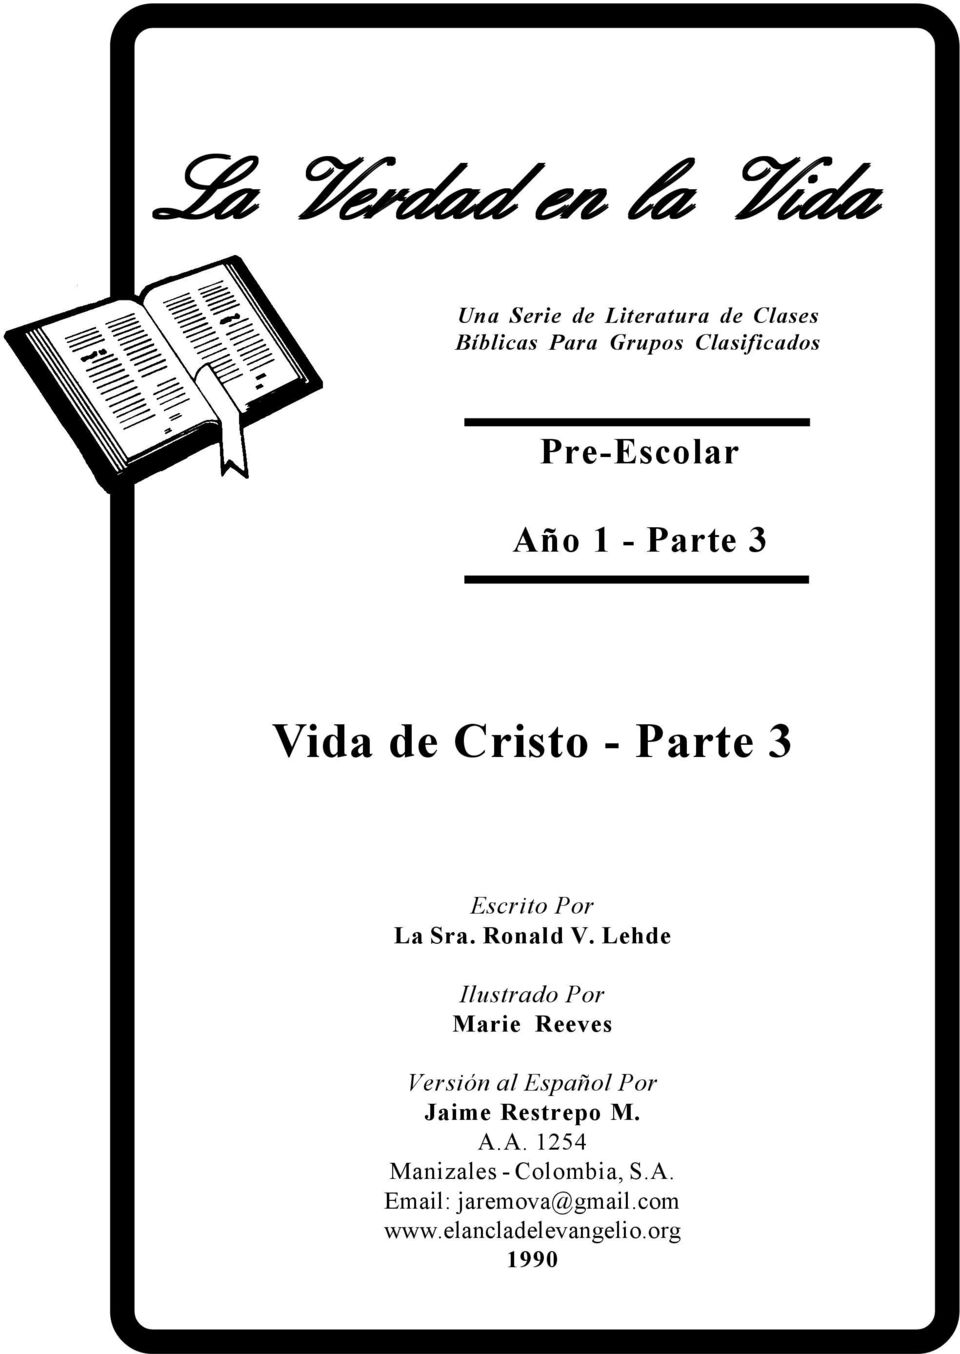 Ronald V. Lehde Ilustrado Por Marie Reeves Versión al Español Por Jaime Restrepo M. A.